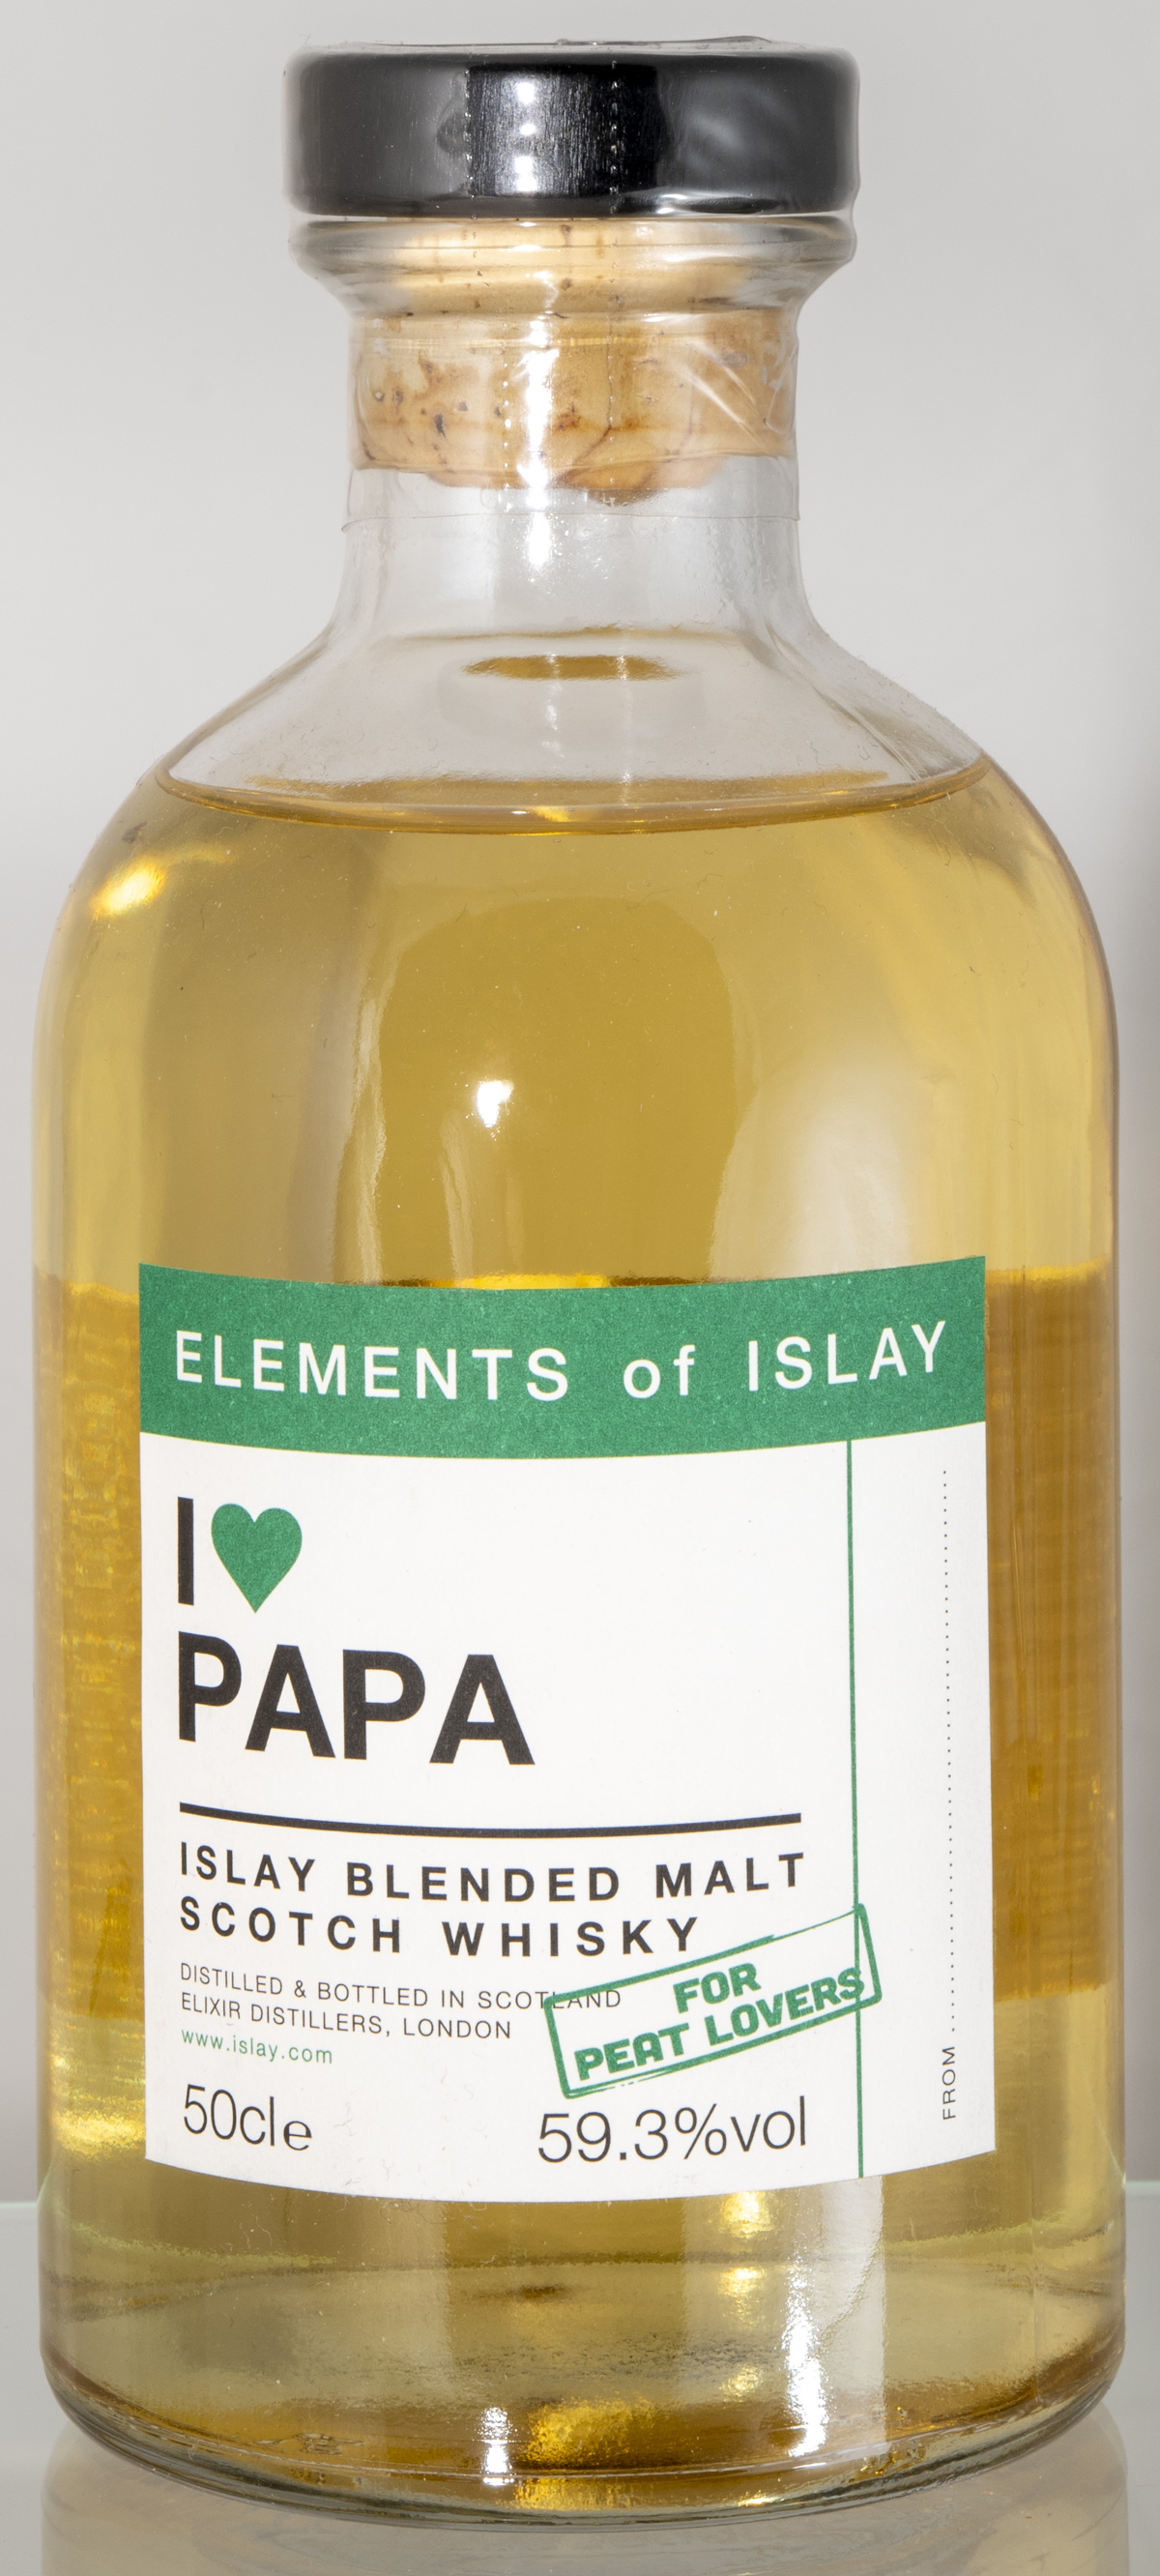 Billede: D85_8325 - Elements of Islay - I love Papa - bottle front.jpg